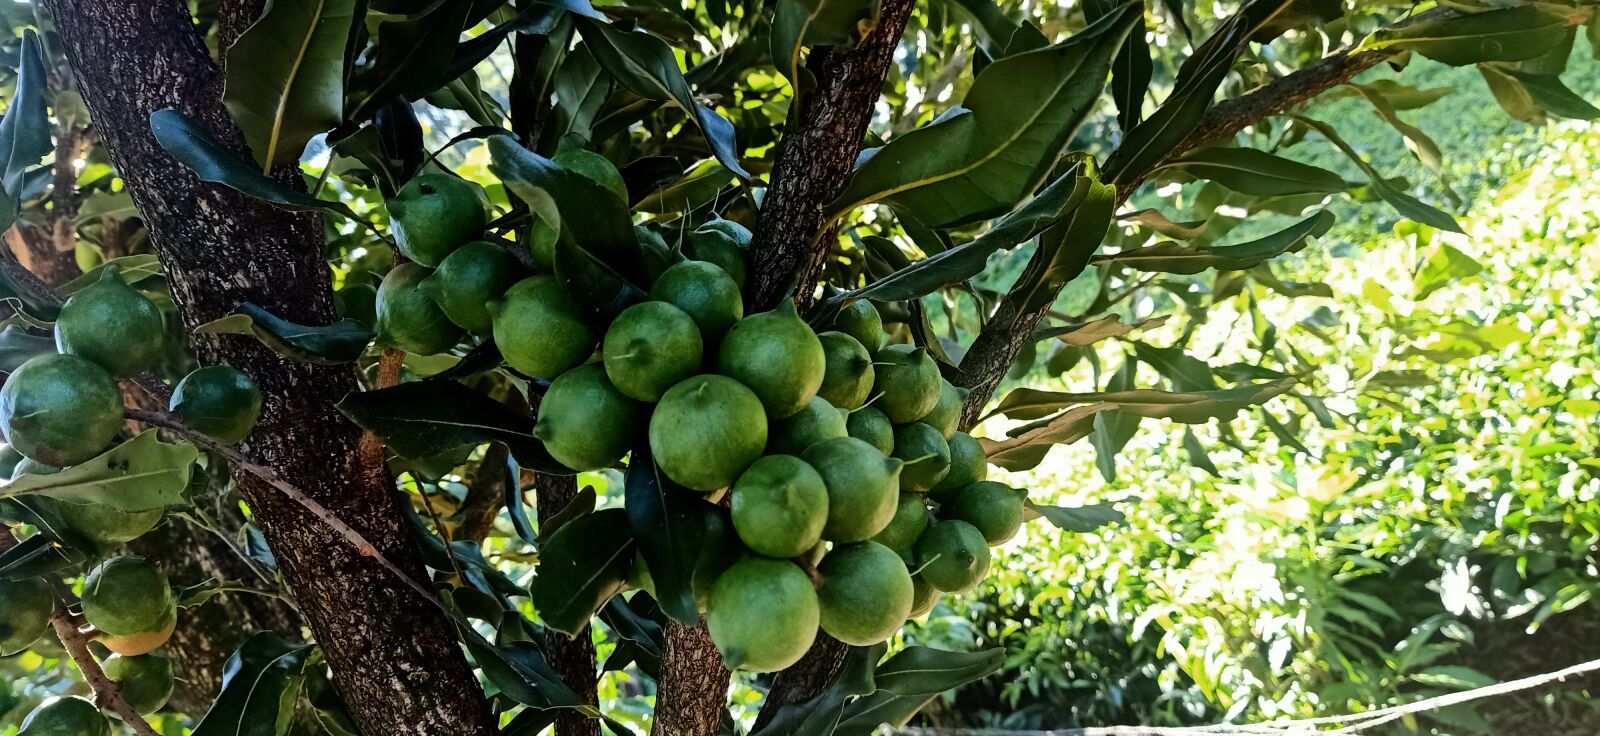 OPPO F11 sample photo. Macadamia, growing, kenya photography